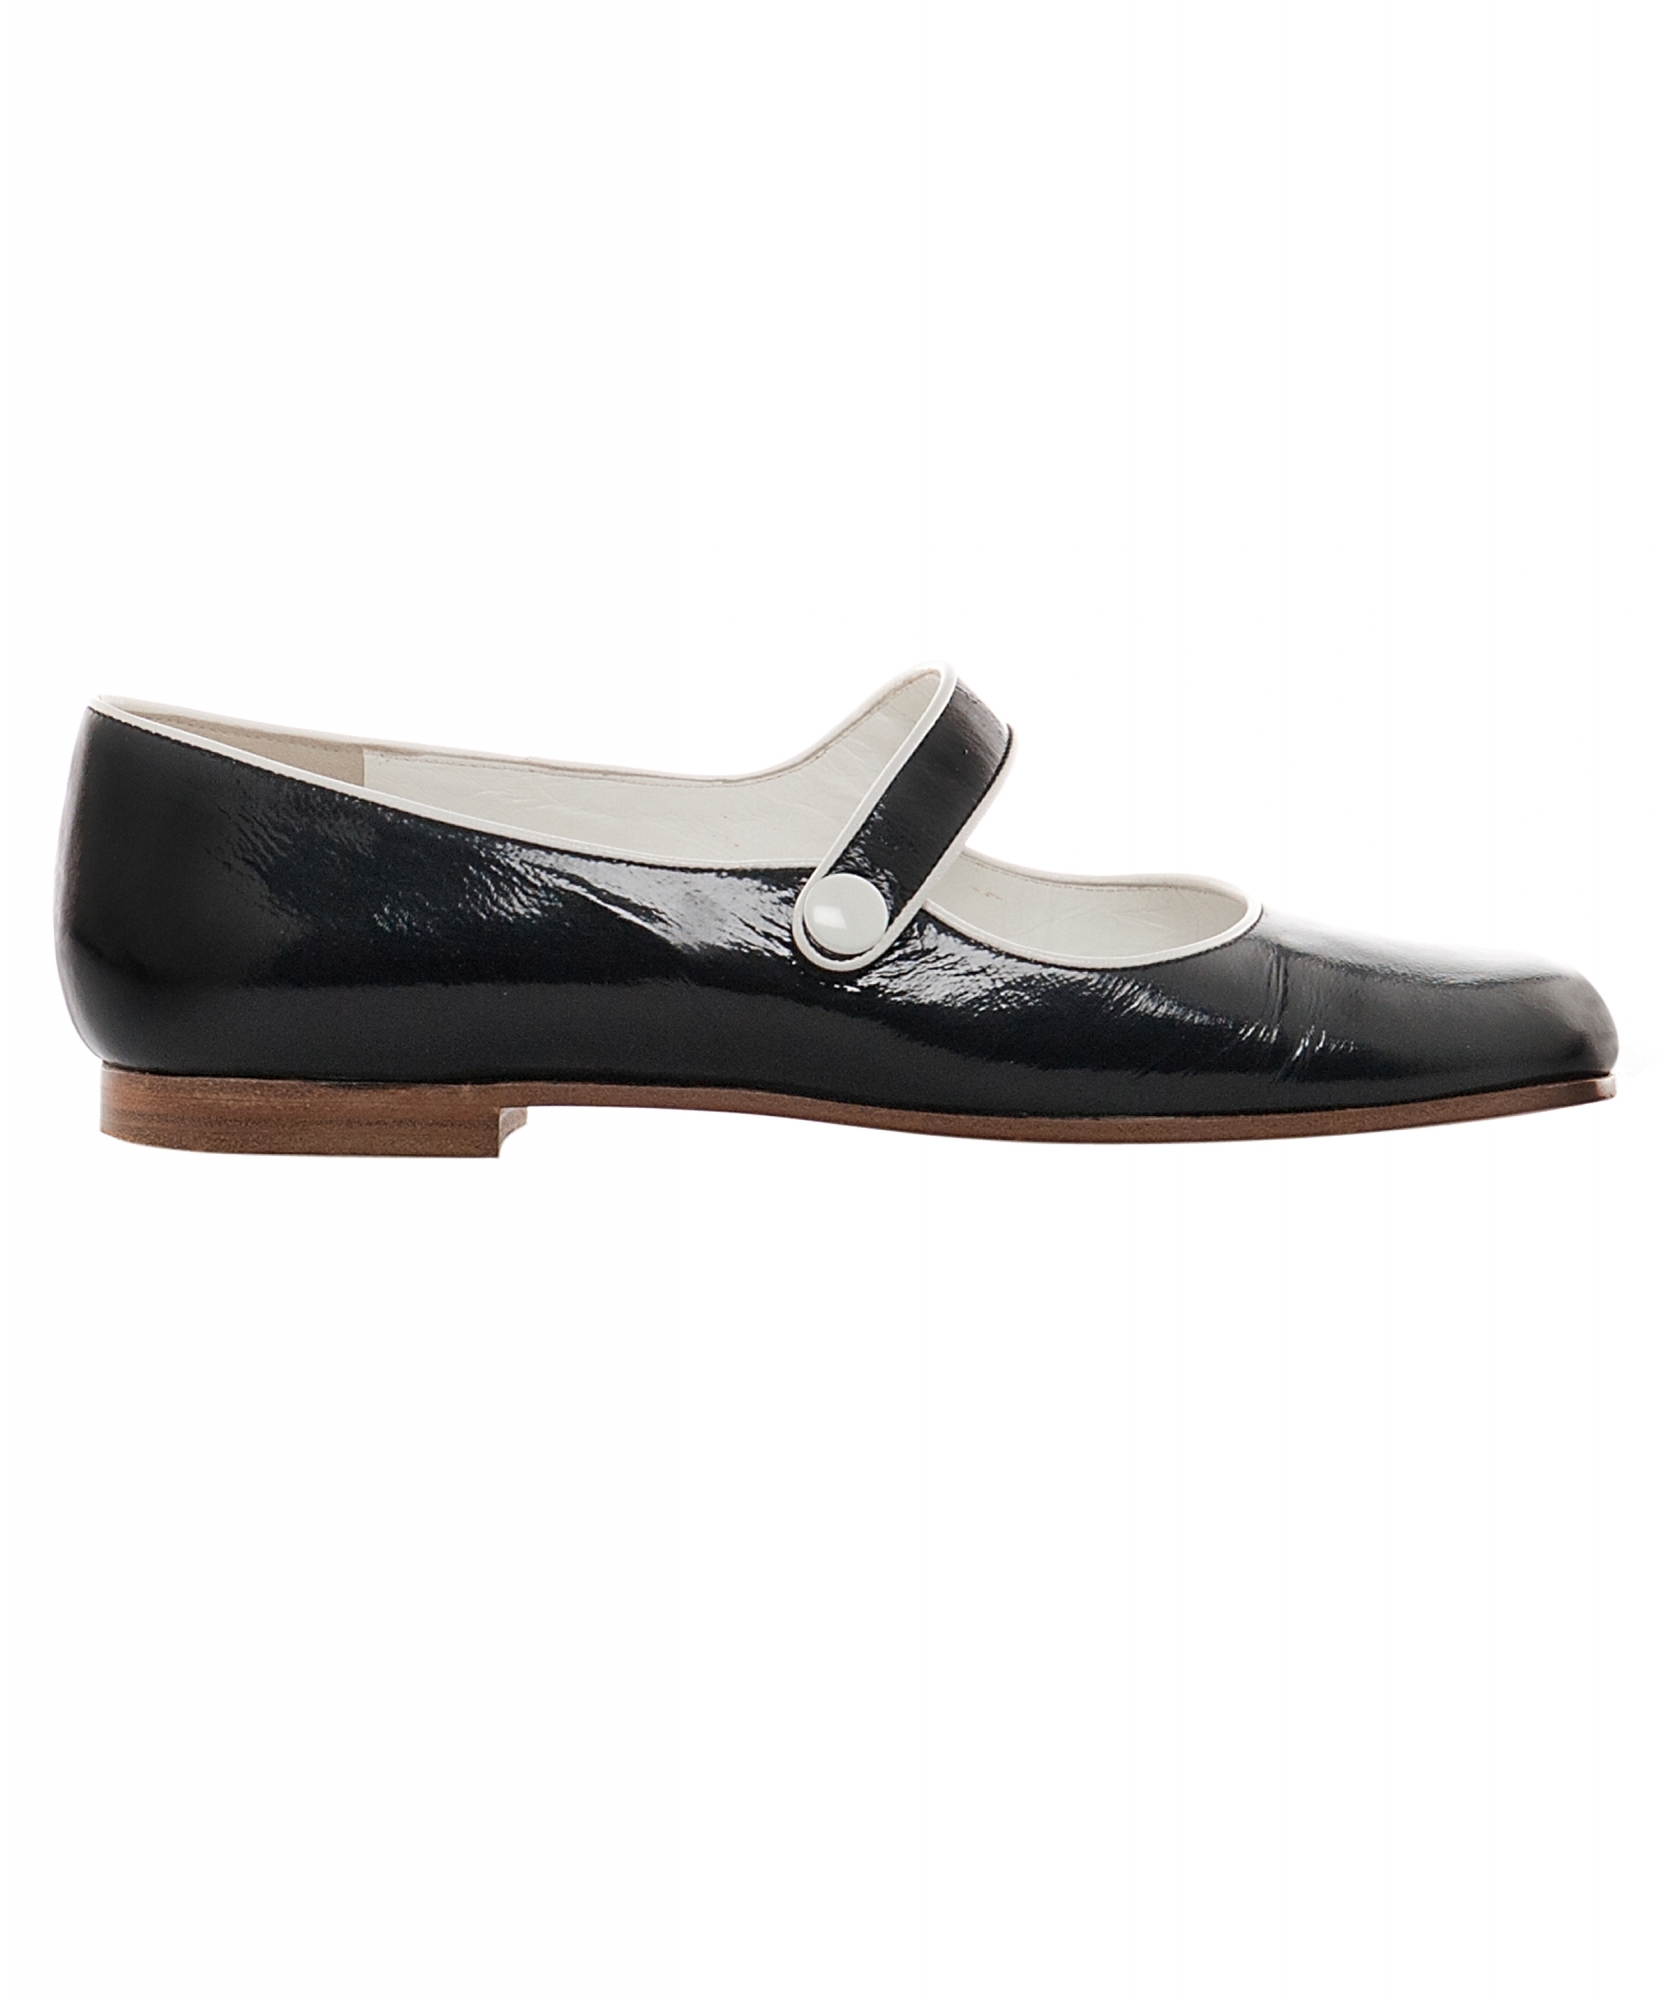 Courrèges Black Mary Jane Style Shoes - Courrèges | La Doyenne